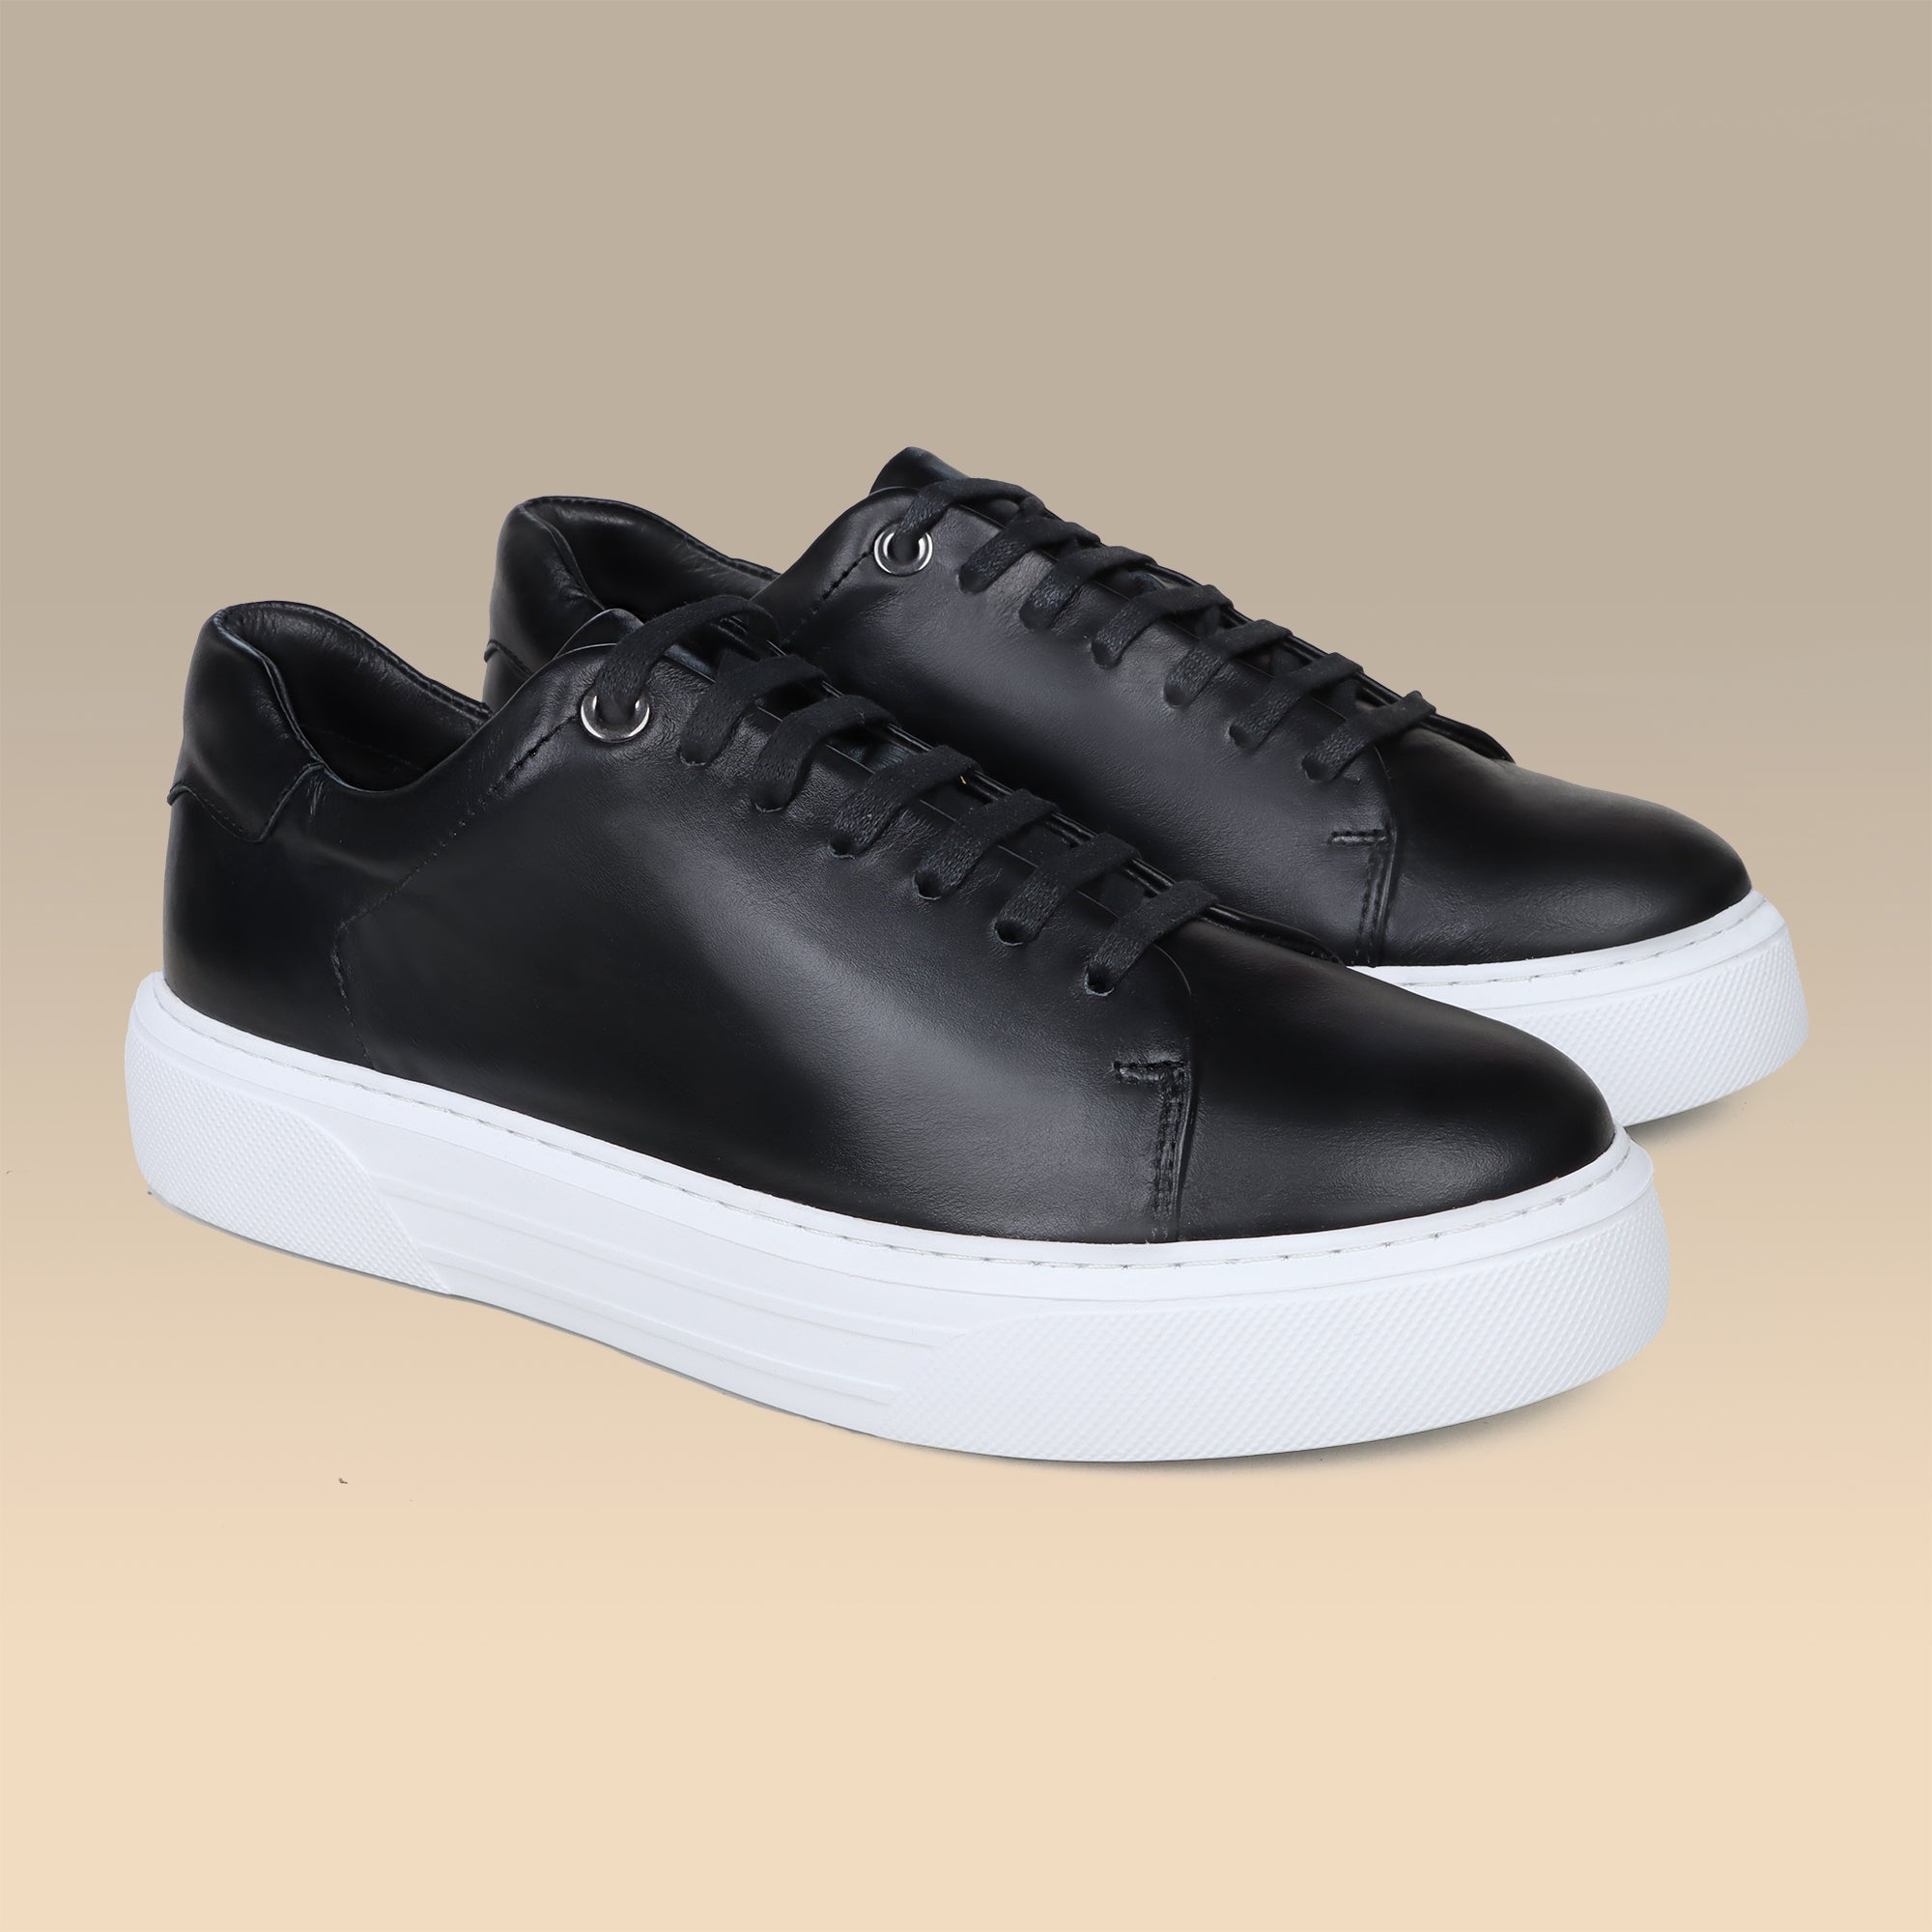 Alexander Basic Full Black: Sleek Comfort in Soft Sneaker Style